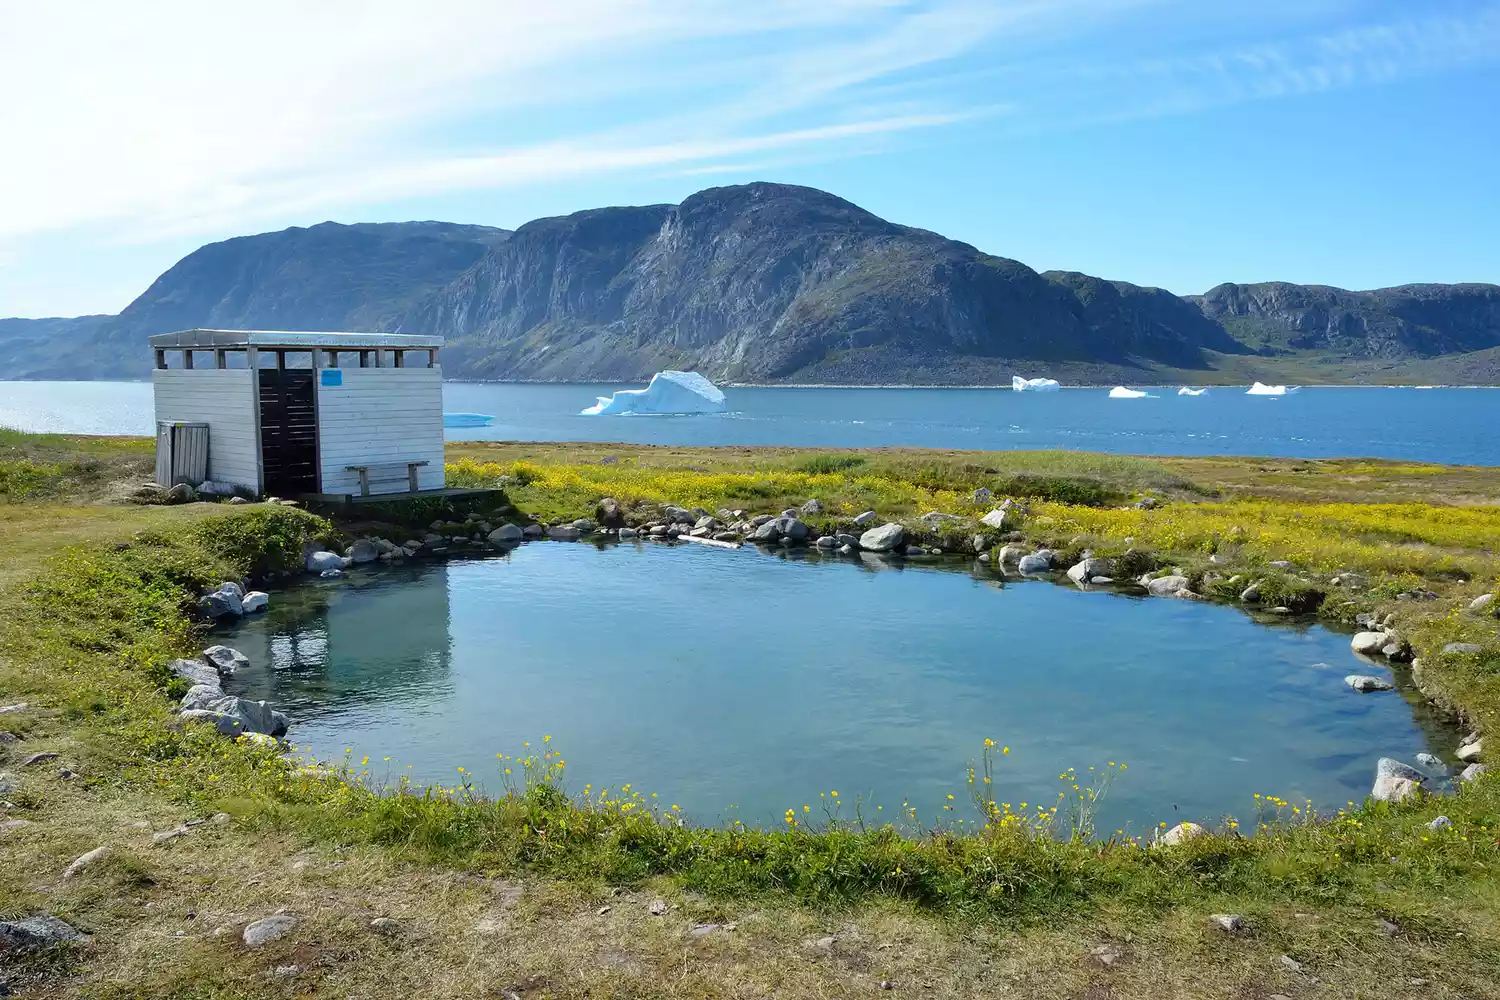 Bể nước nóng gần hồ và núi vào một ngày nắng ở Uunartoq, Greenland